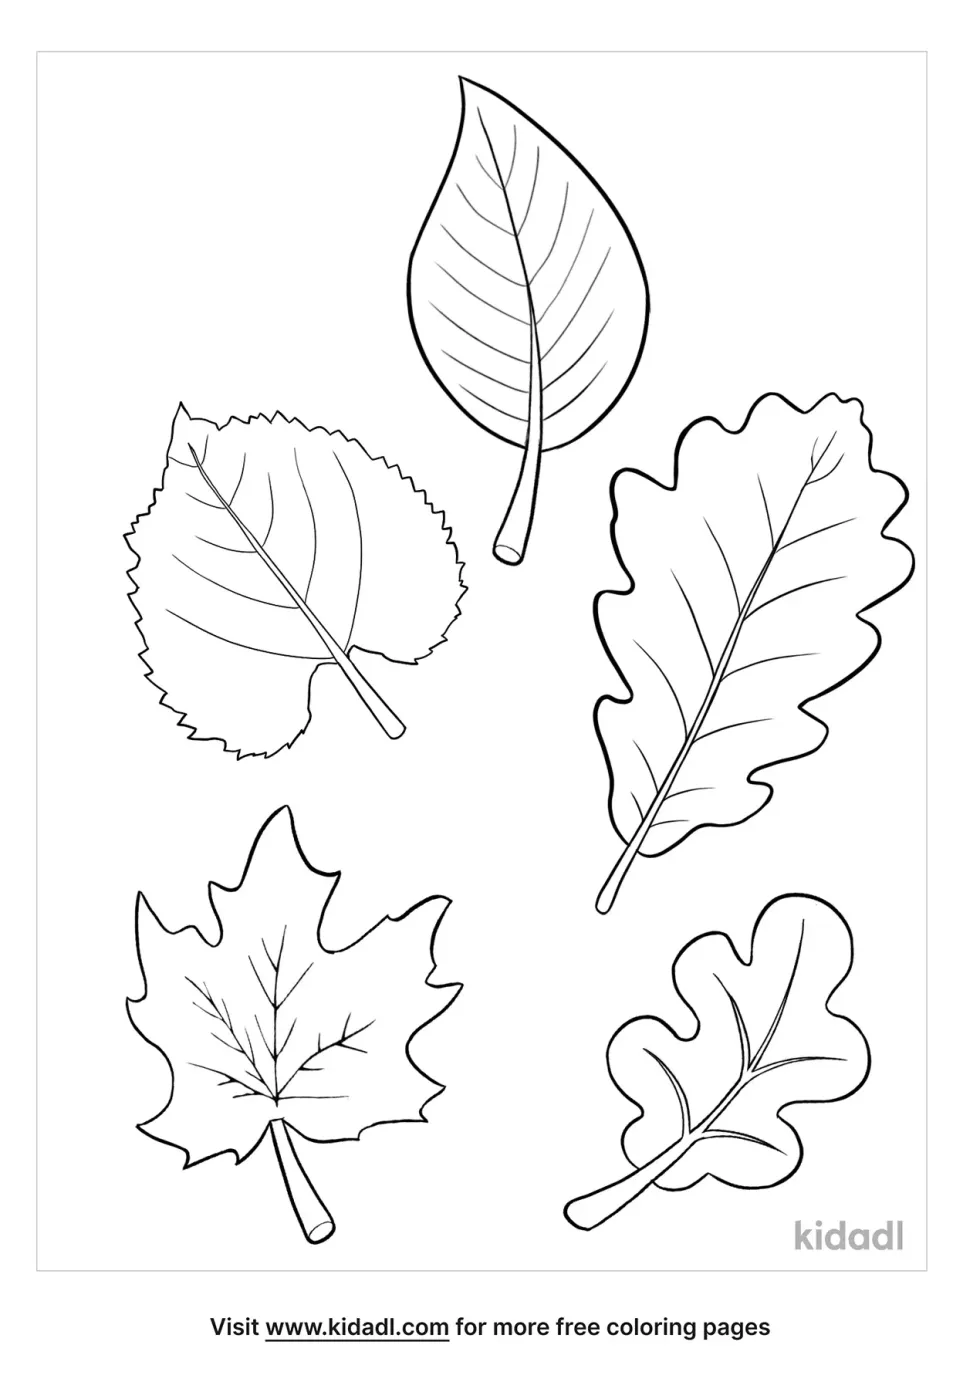 5 Leaves